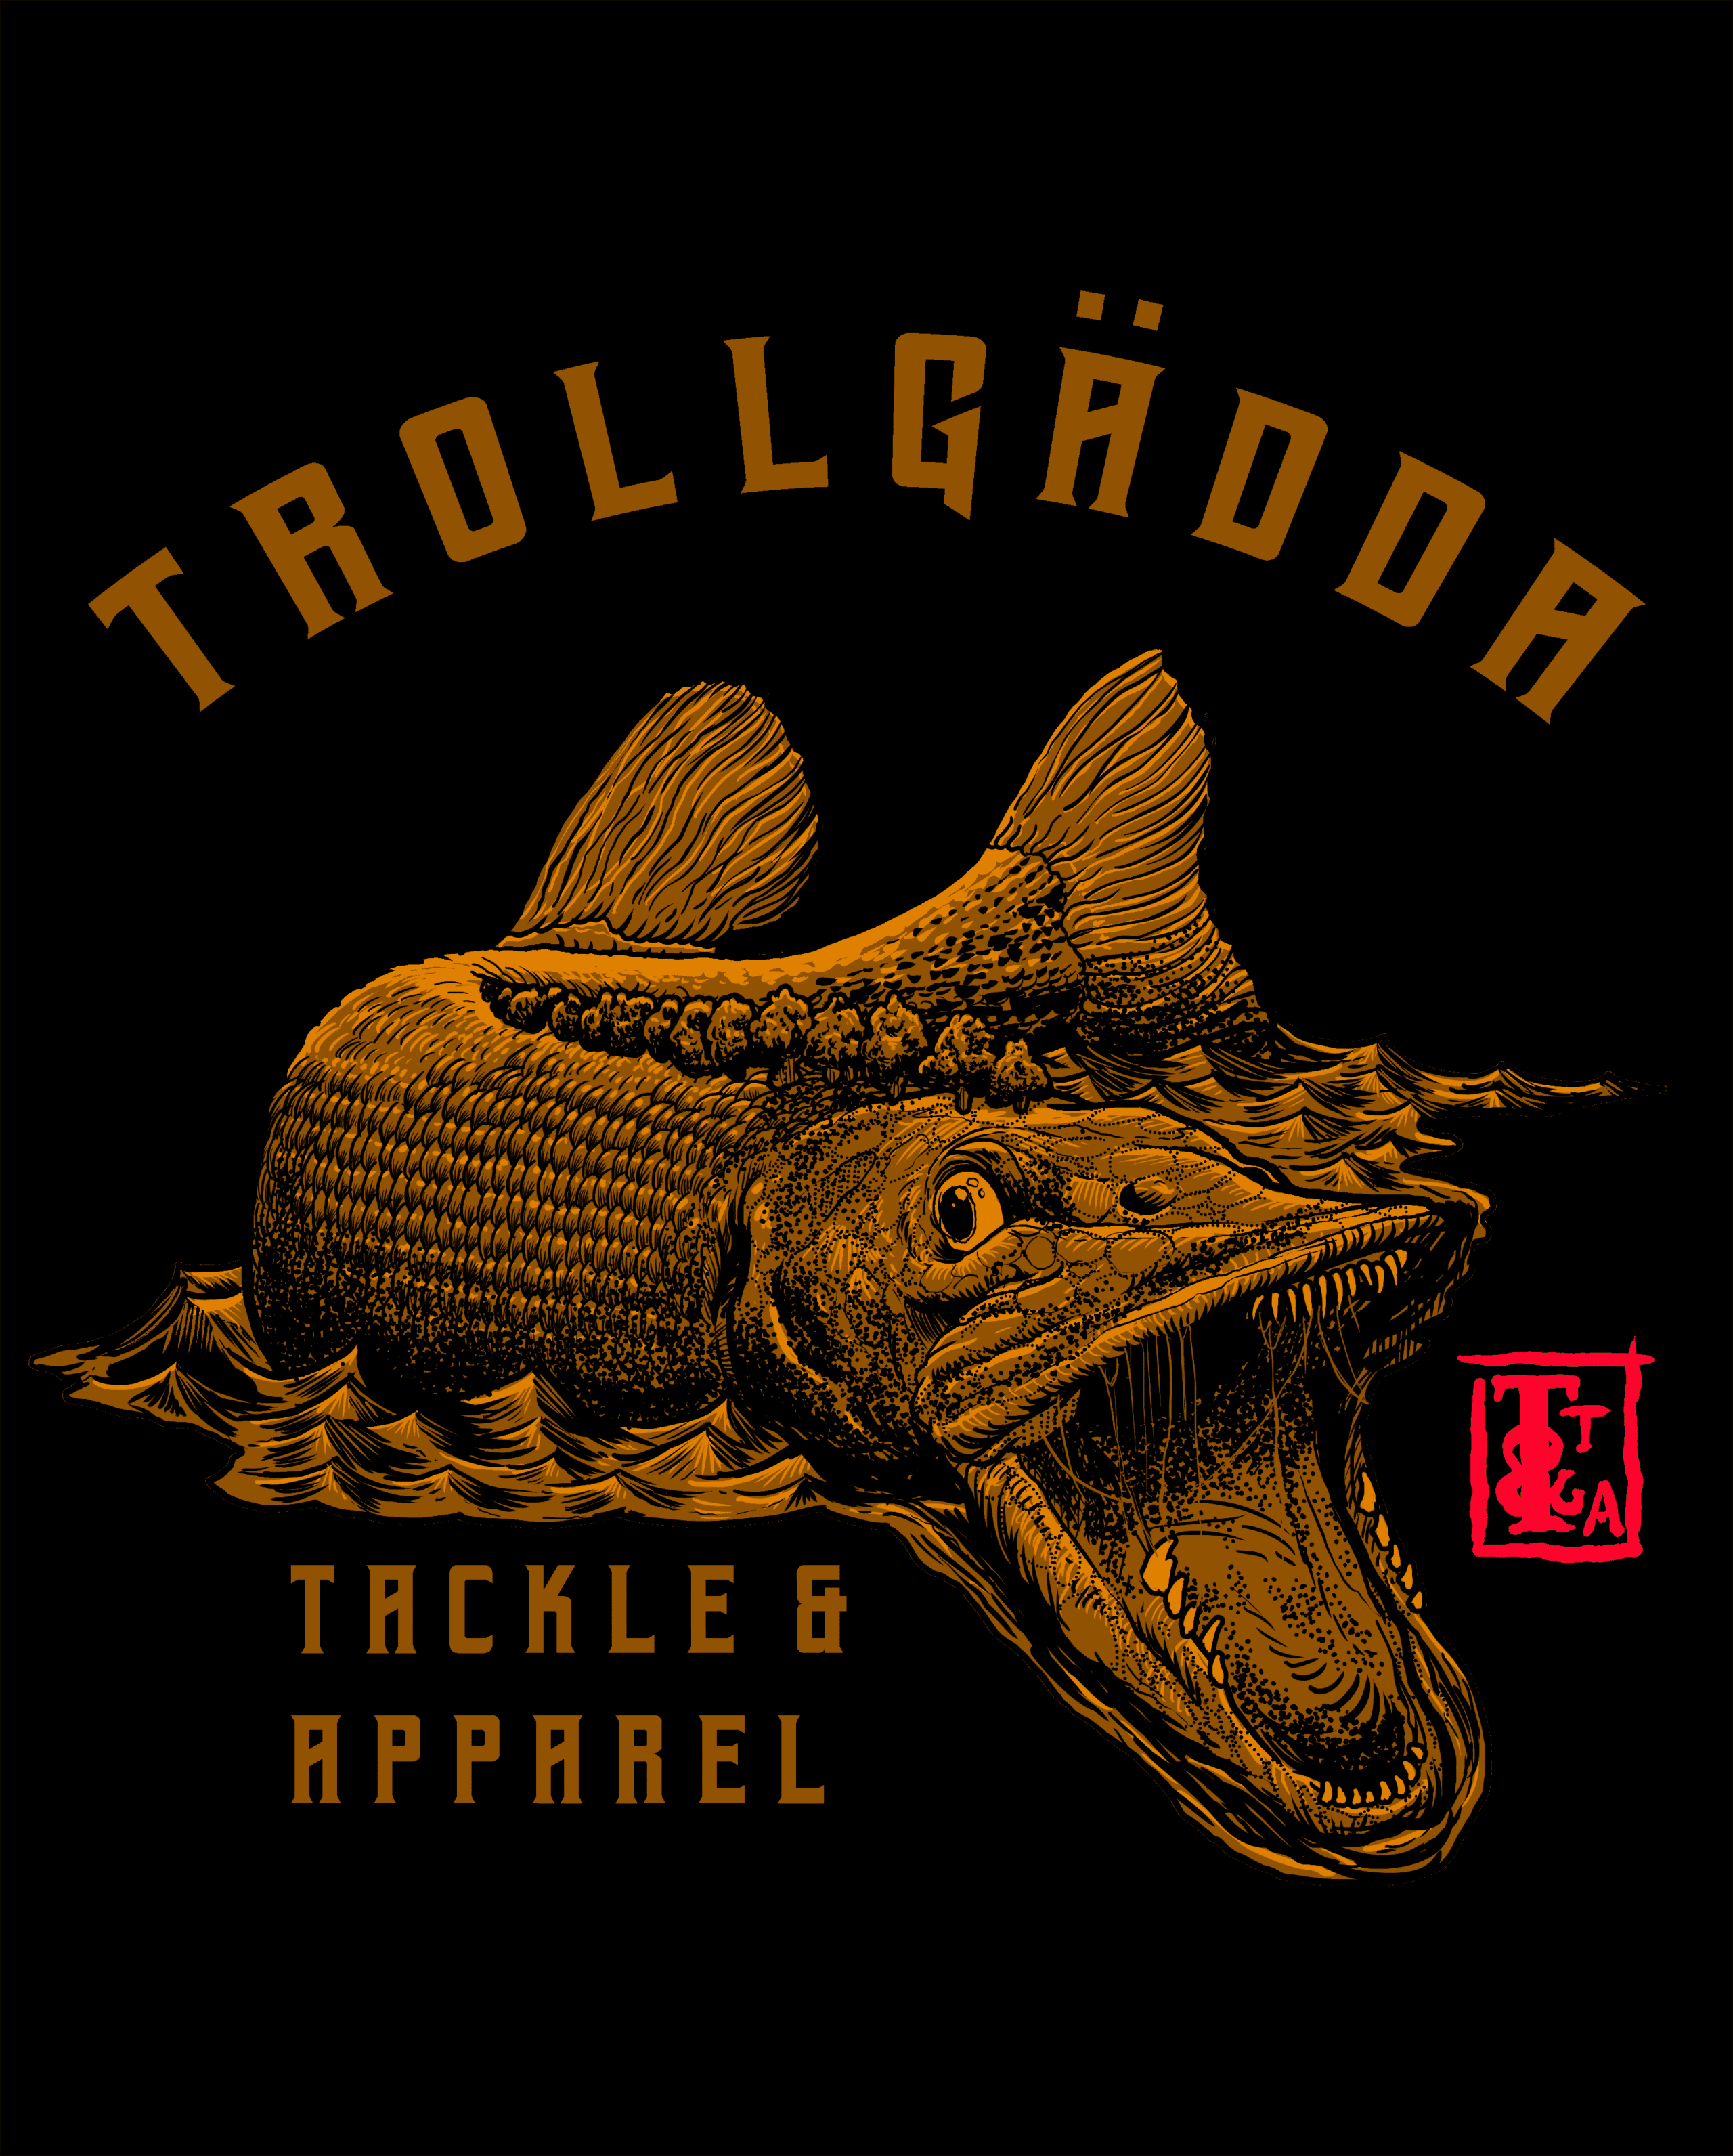 Trollgadda Tackle and Apparel